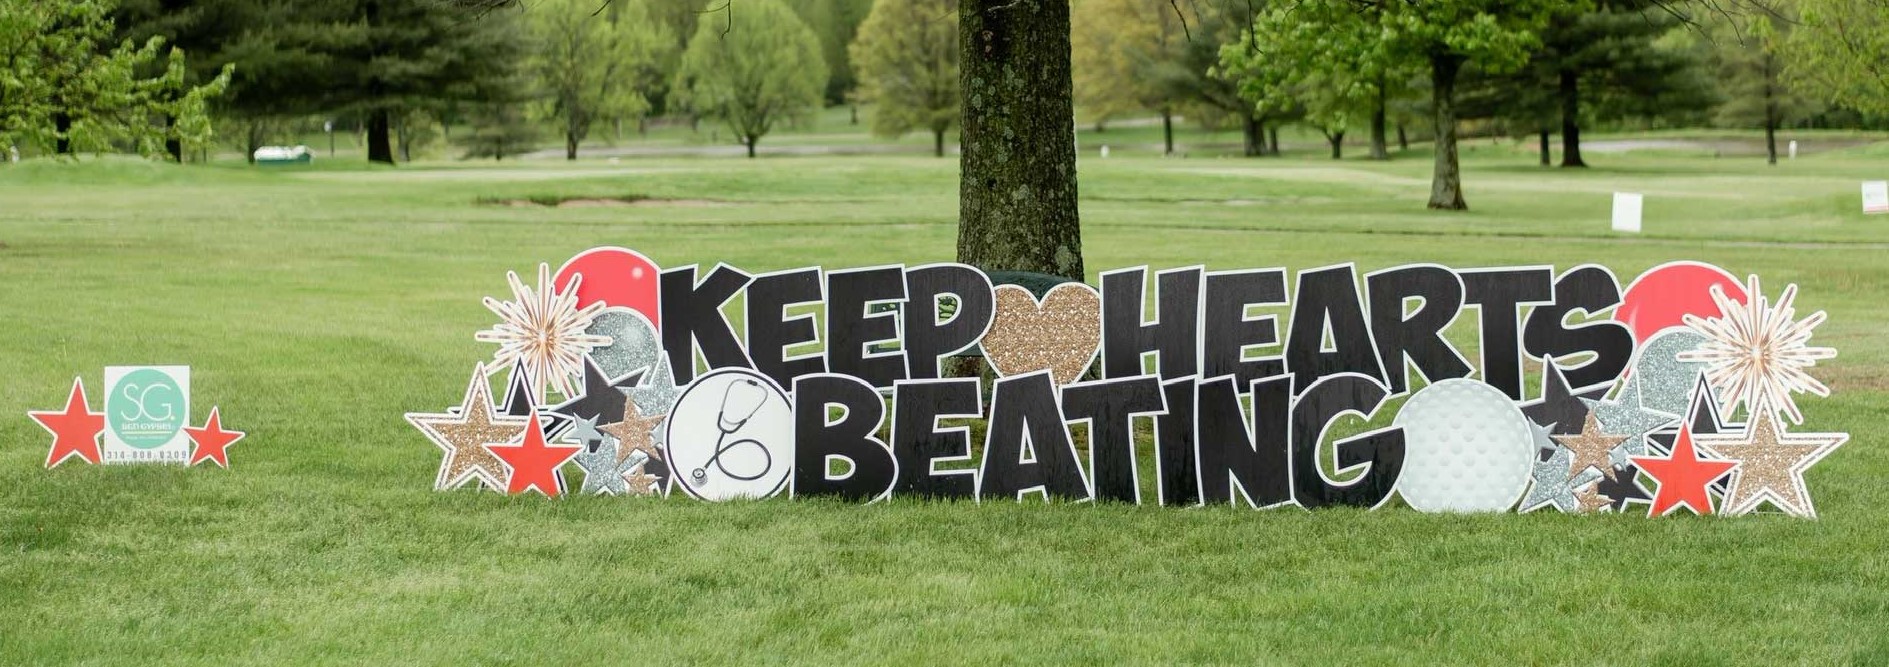 Sign saying "Keep Hearts Beating"